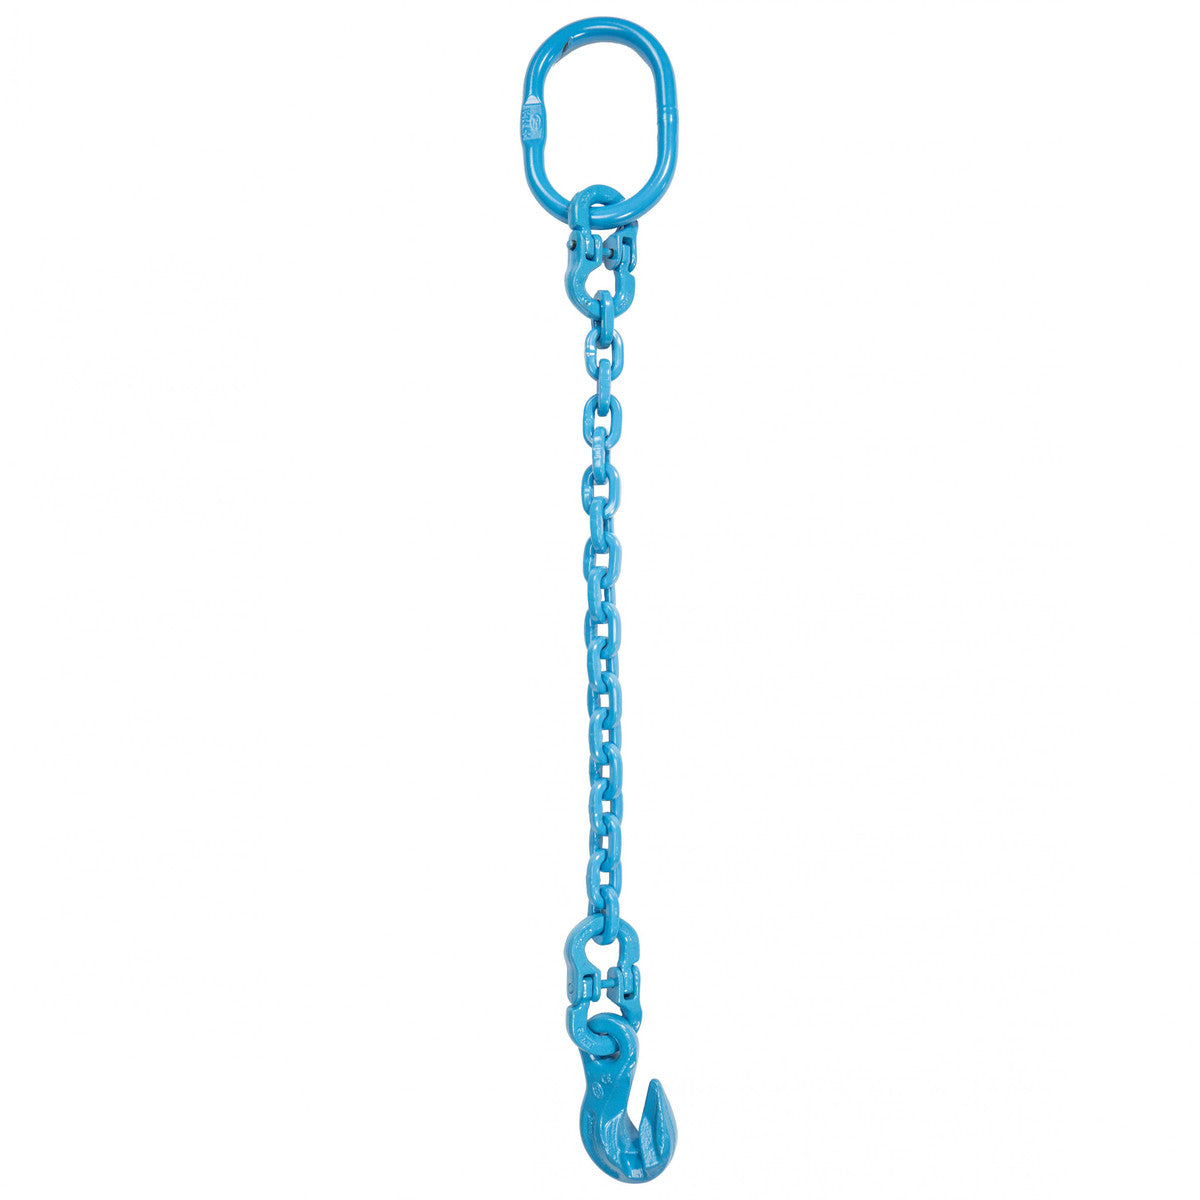 9/32" x 3' - Pewag Single Leg Chain Sling w/ Grab Hook - Grade 120